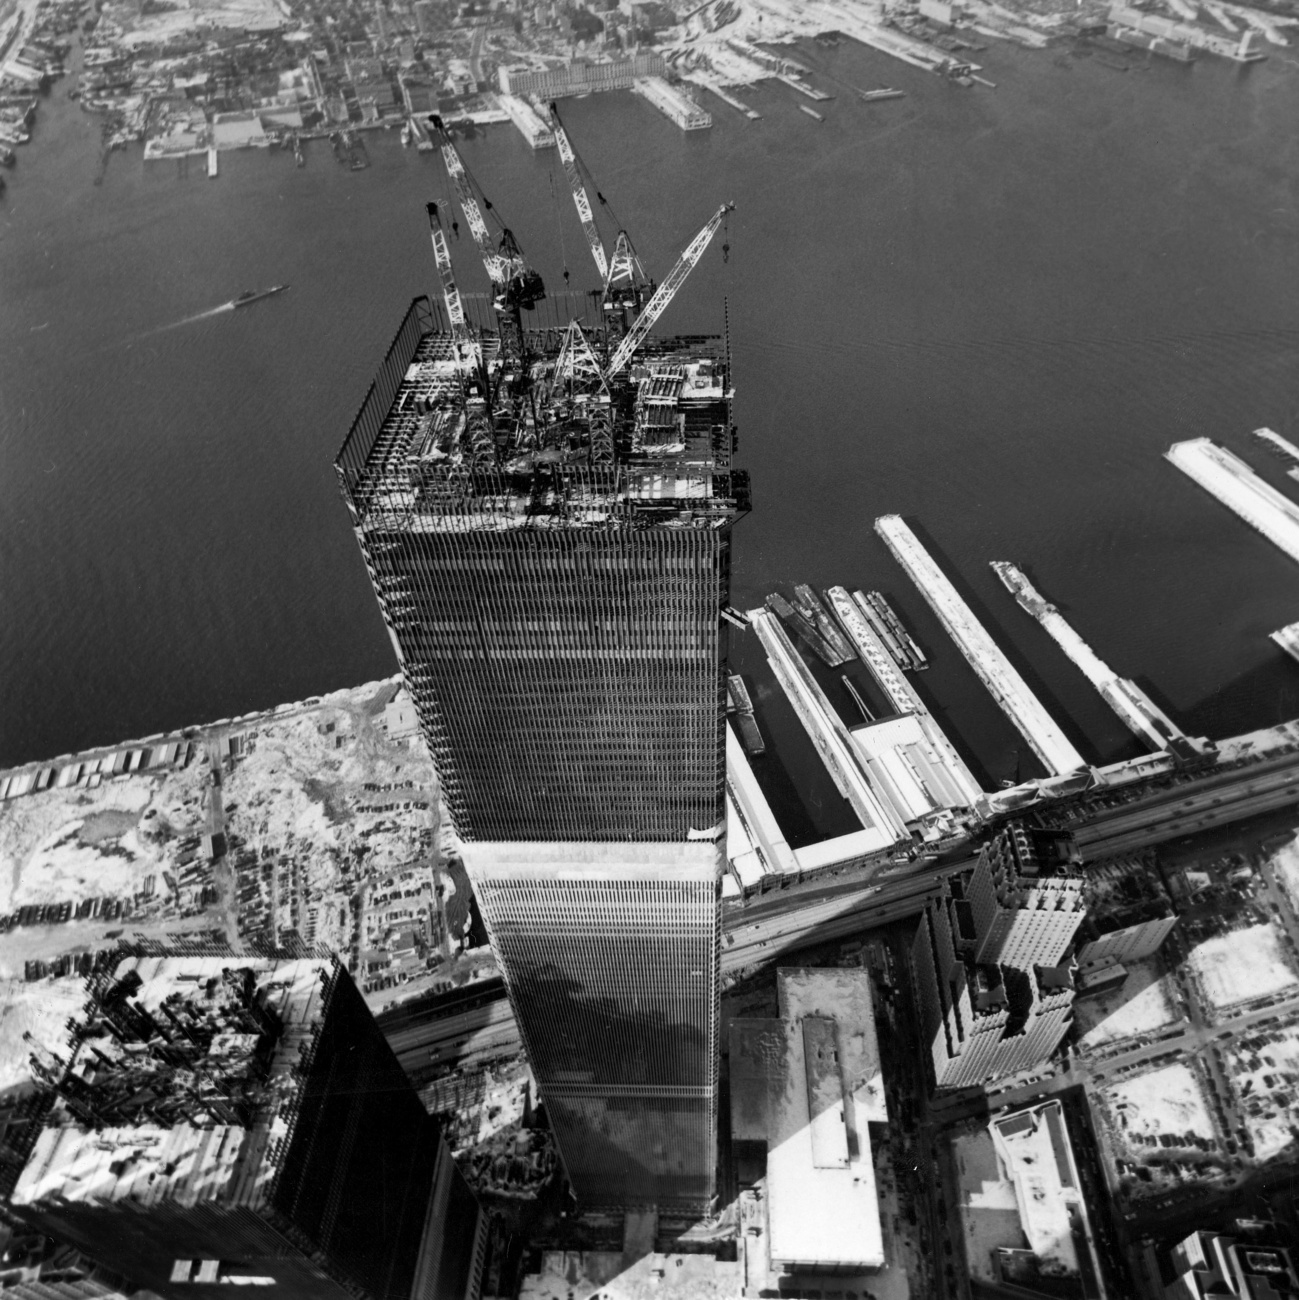 Kilátás a Freedom Tower századik emeletén. A torony várhatóan 2015-ben nyílik meg a nyilvánosság számára. 